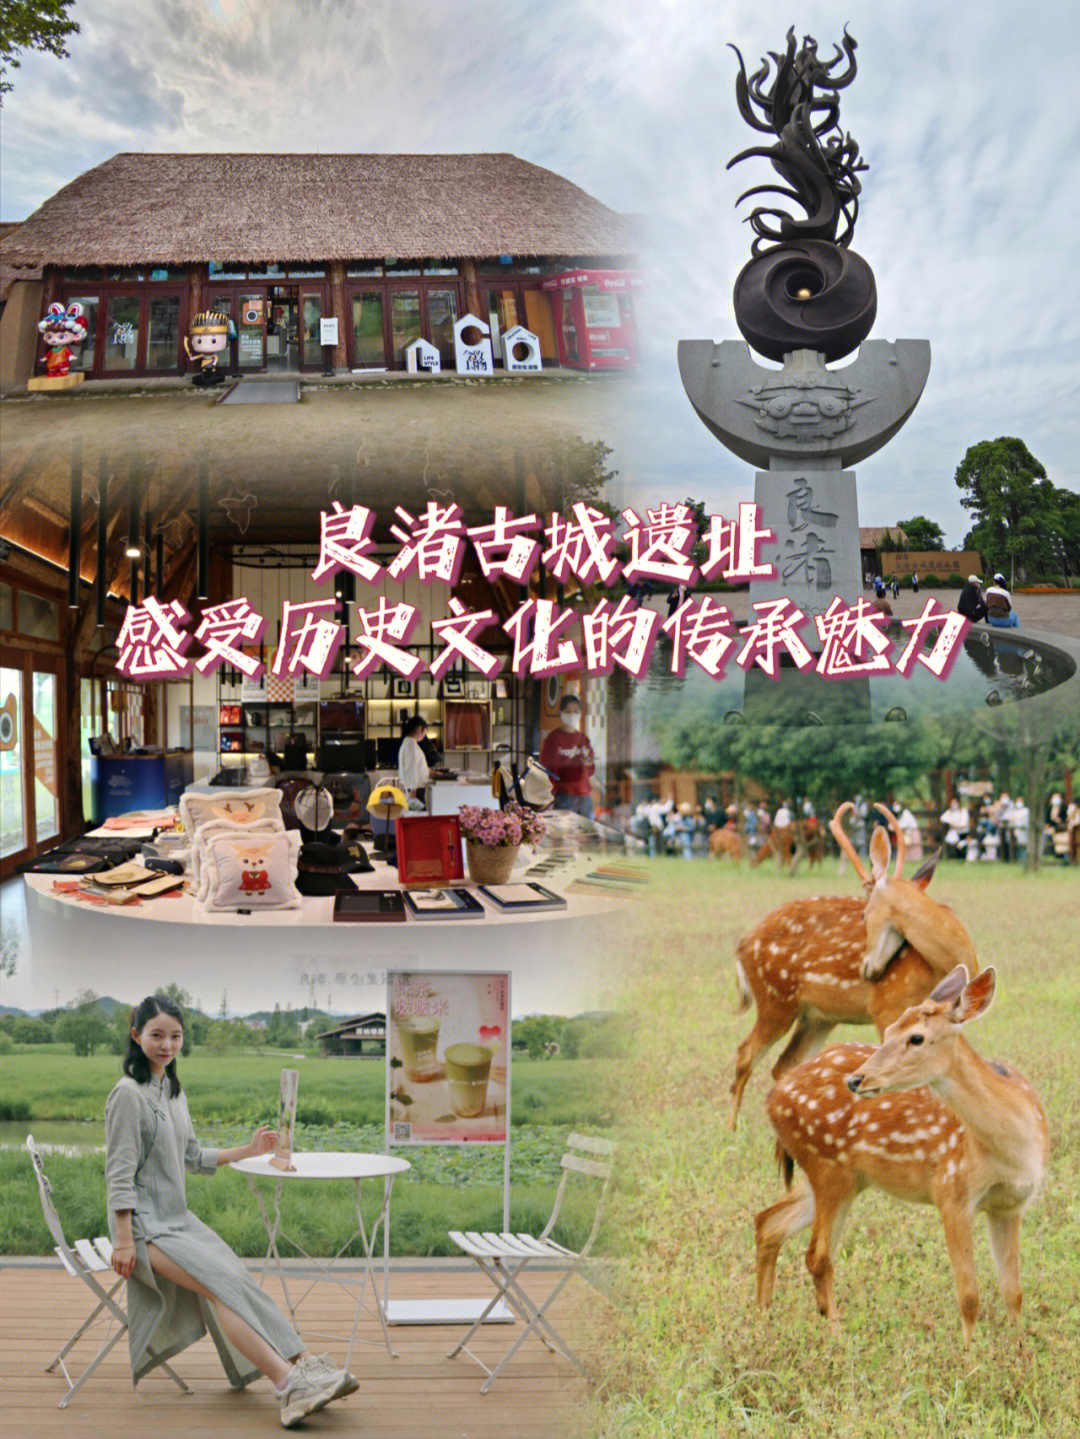 良渚文化小报图片